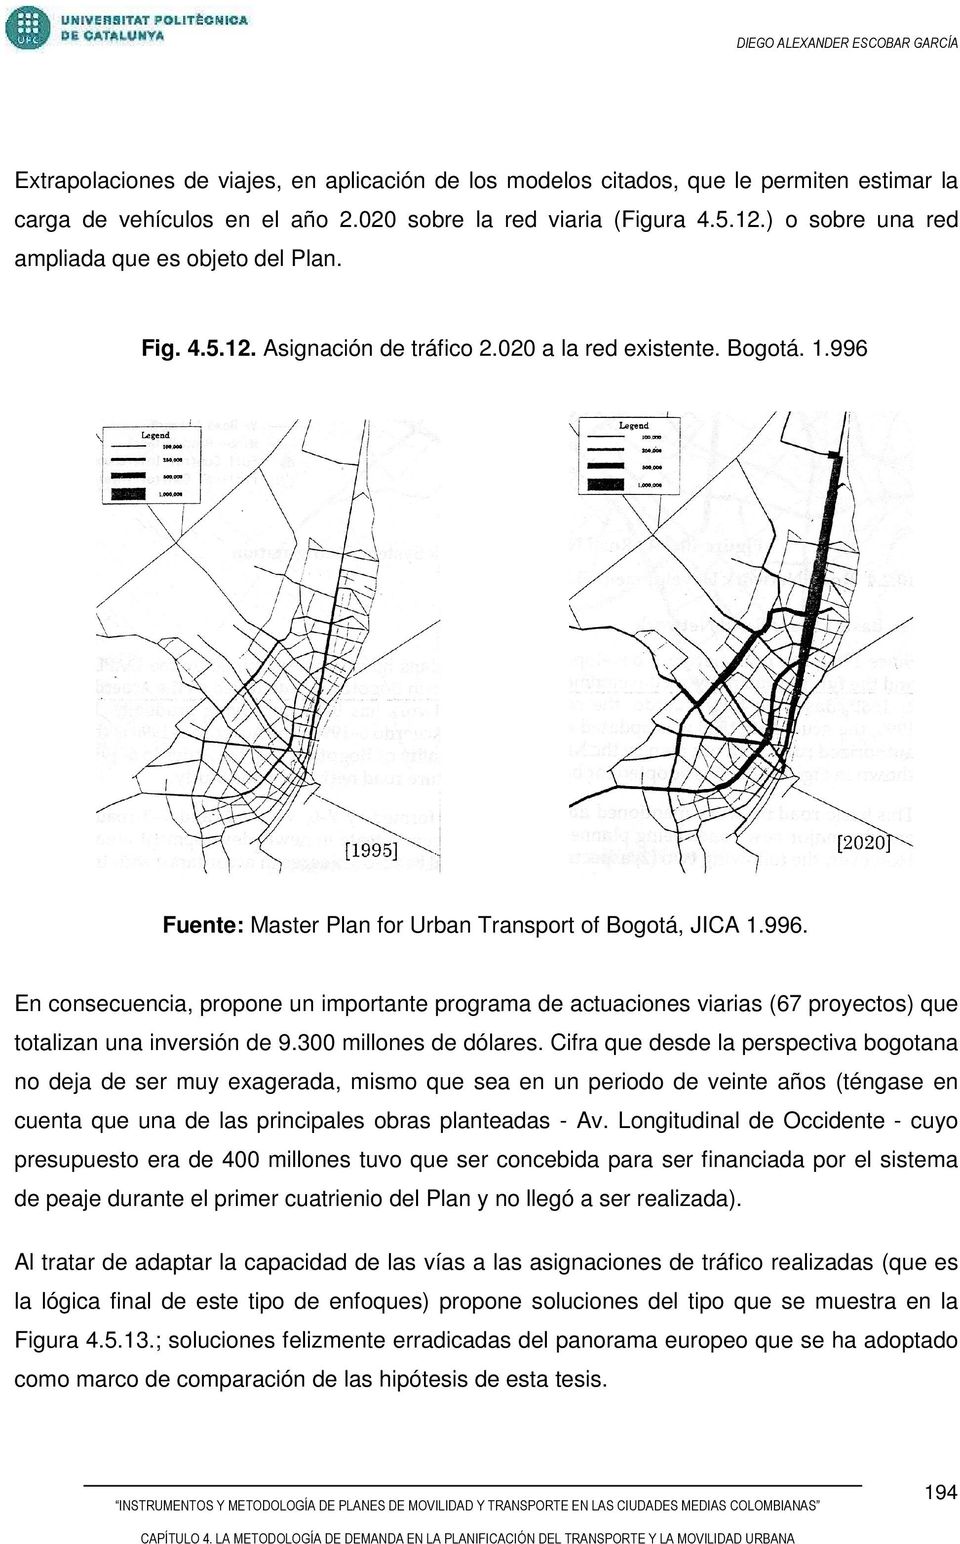 Fuente: Master Plan for Urban Transport of Bogotá, JICA 1.996. En consecuencia, propone un importante programa de actuaciones viarias (67 proyectos) que totalizan una inversión de 9.